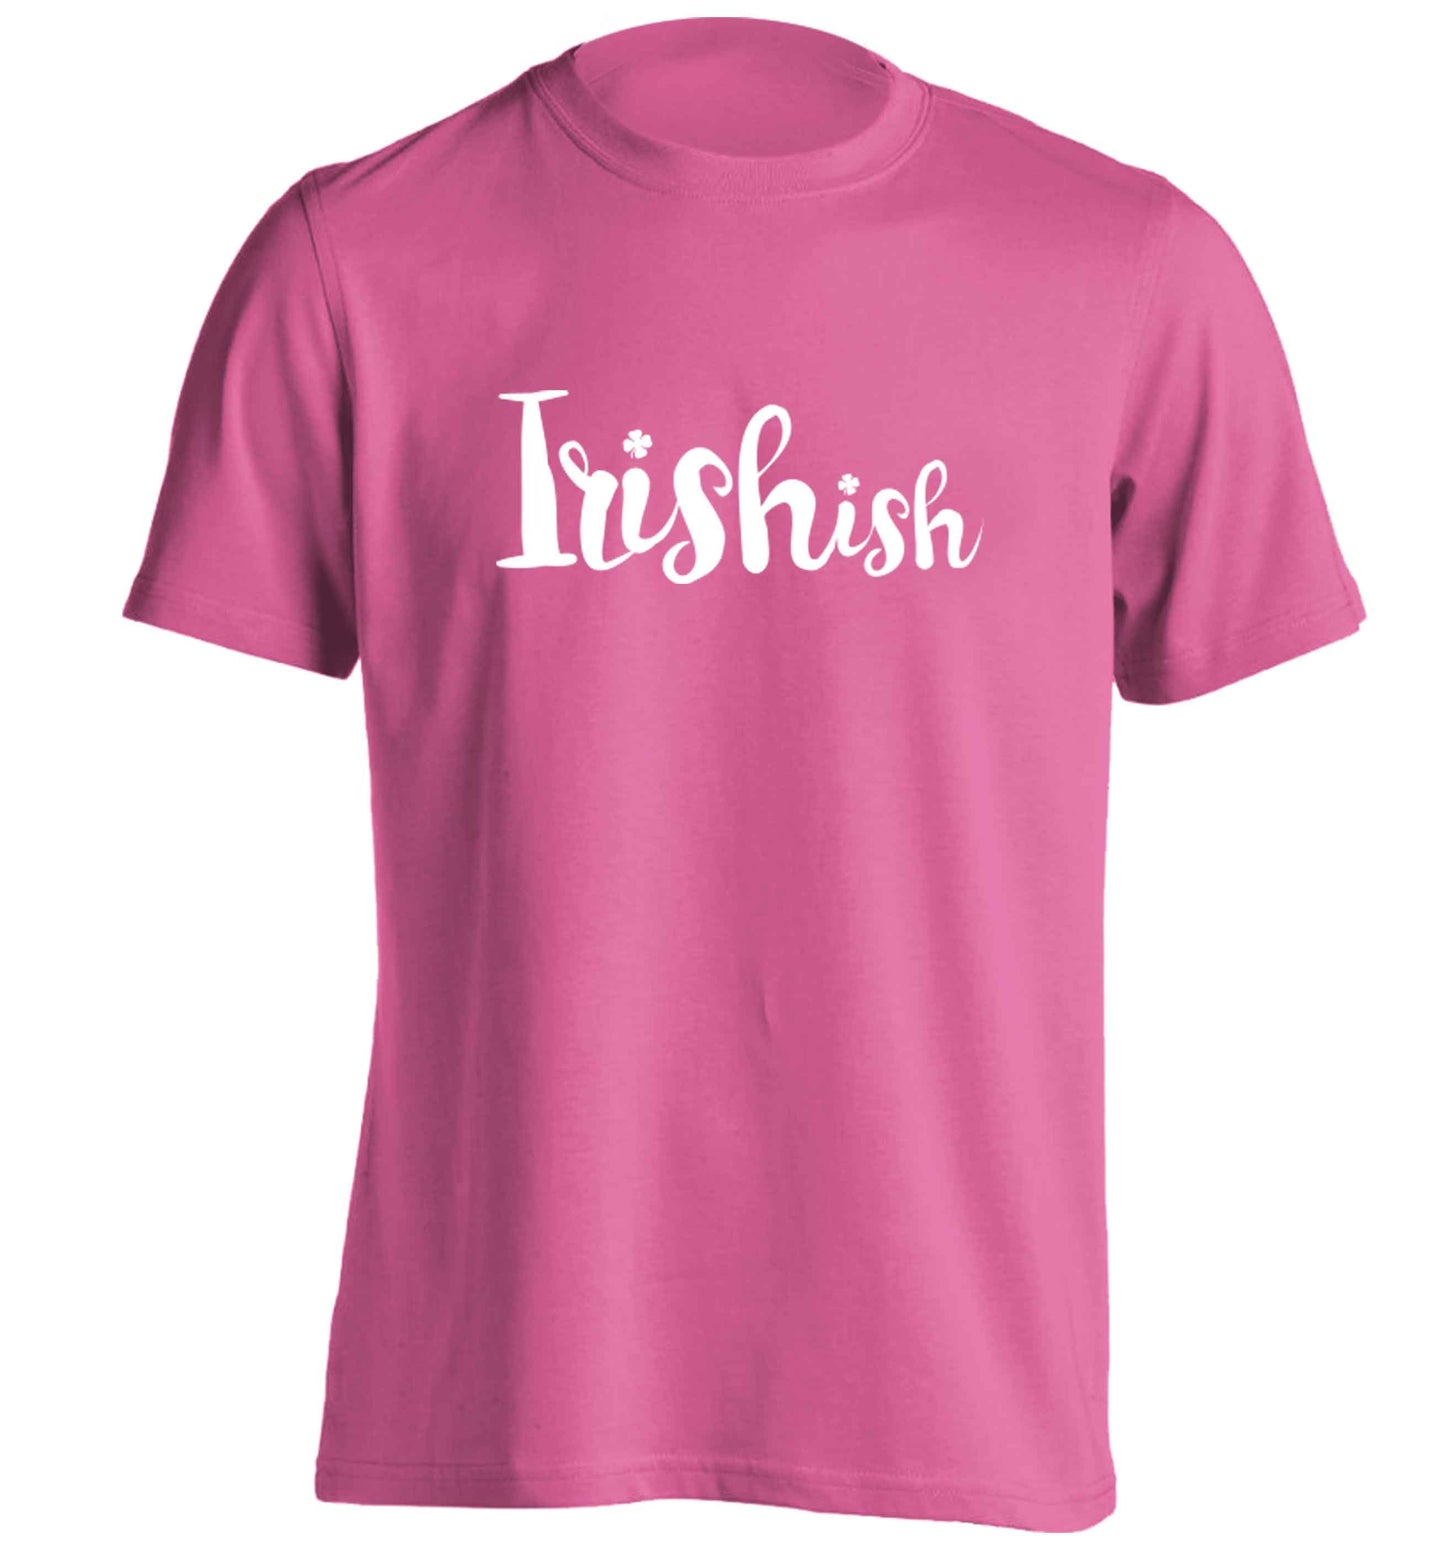 Irishish adults unisex pink Tshirt 2XL